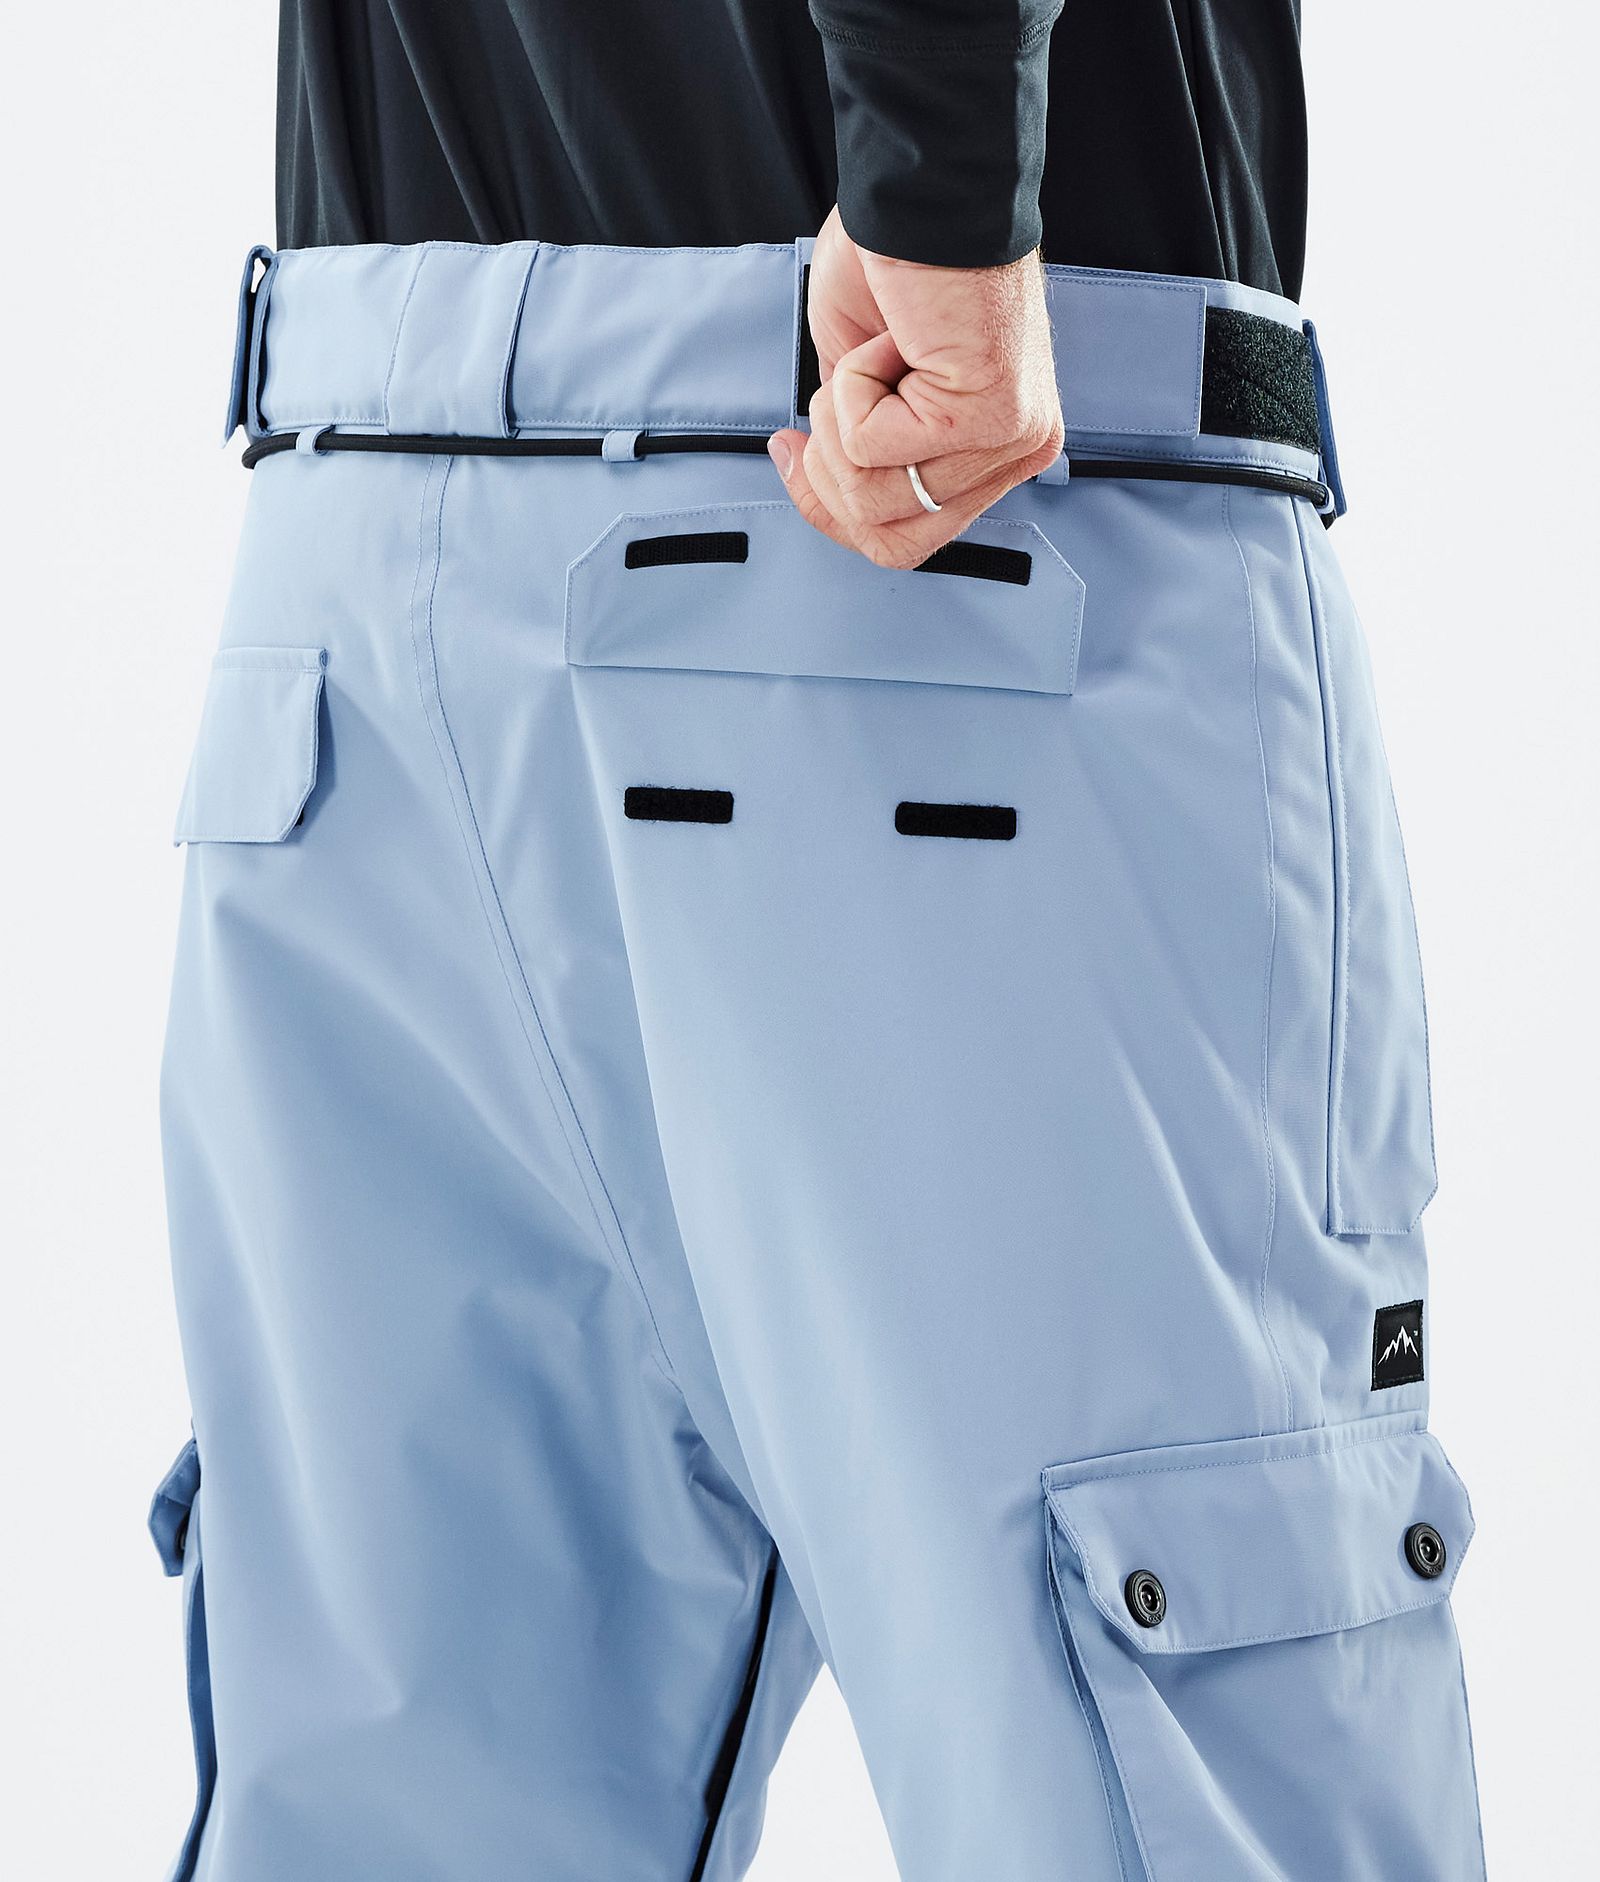 Iconic Pantalones Esquí Hombre Light Blue